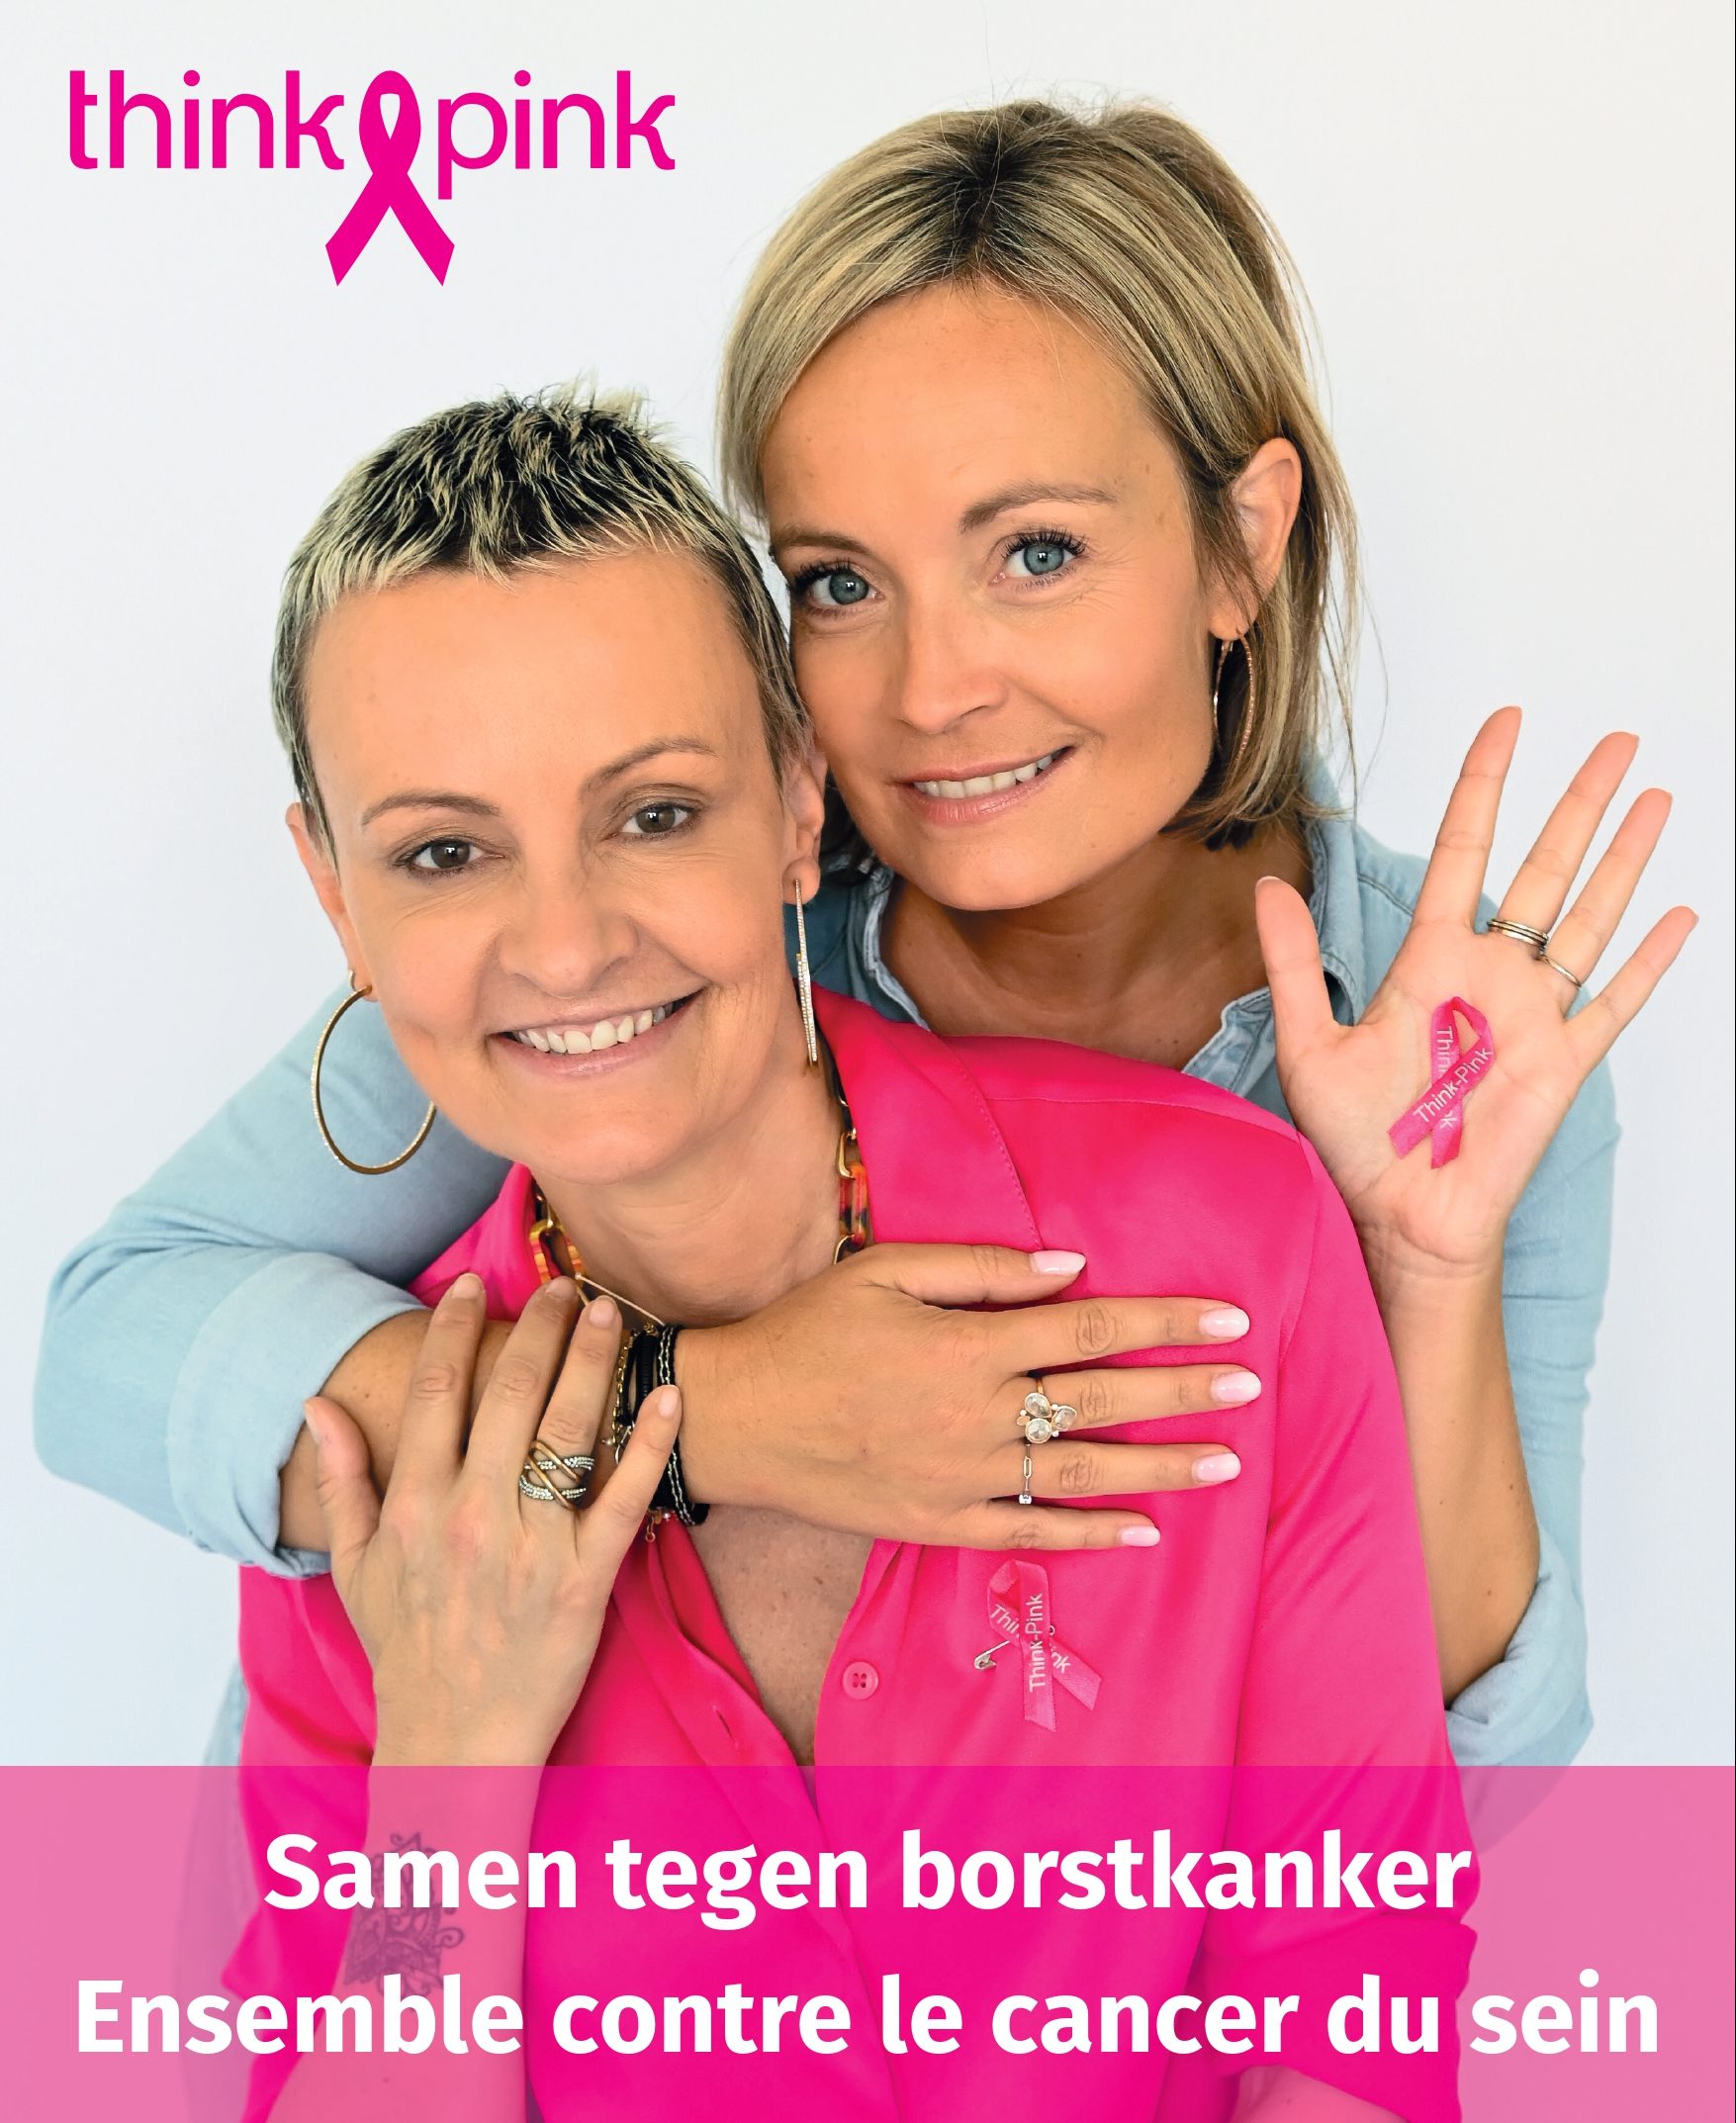 Le cancer du sein, c’est l’affaire de tous. POP s’engage avec Think Pink